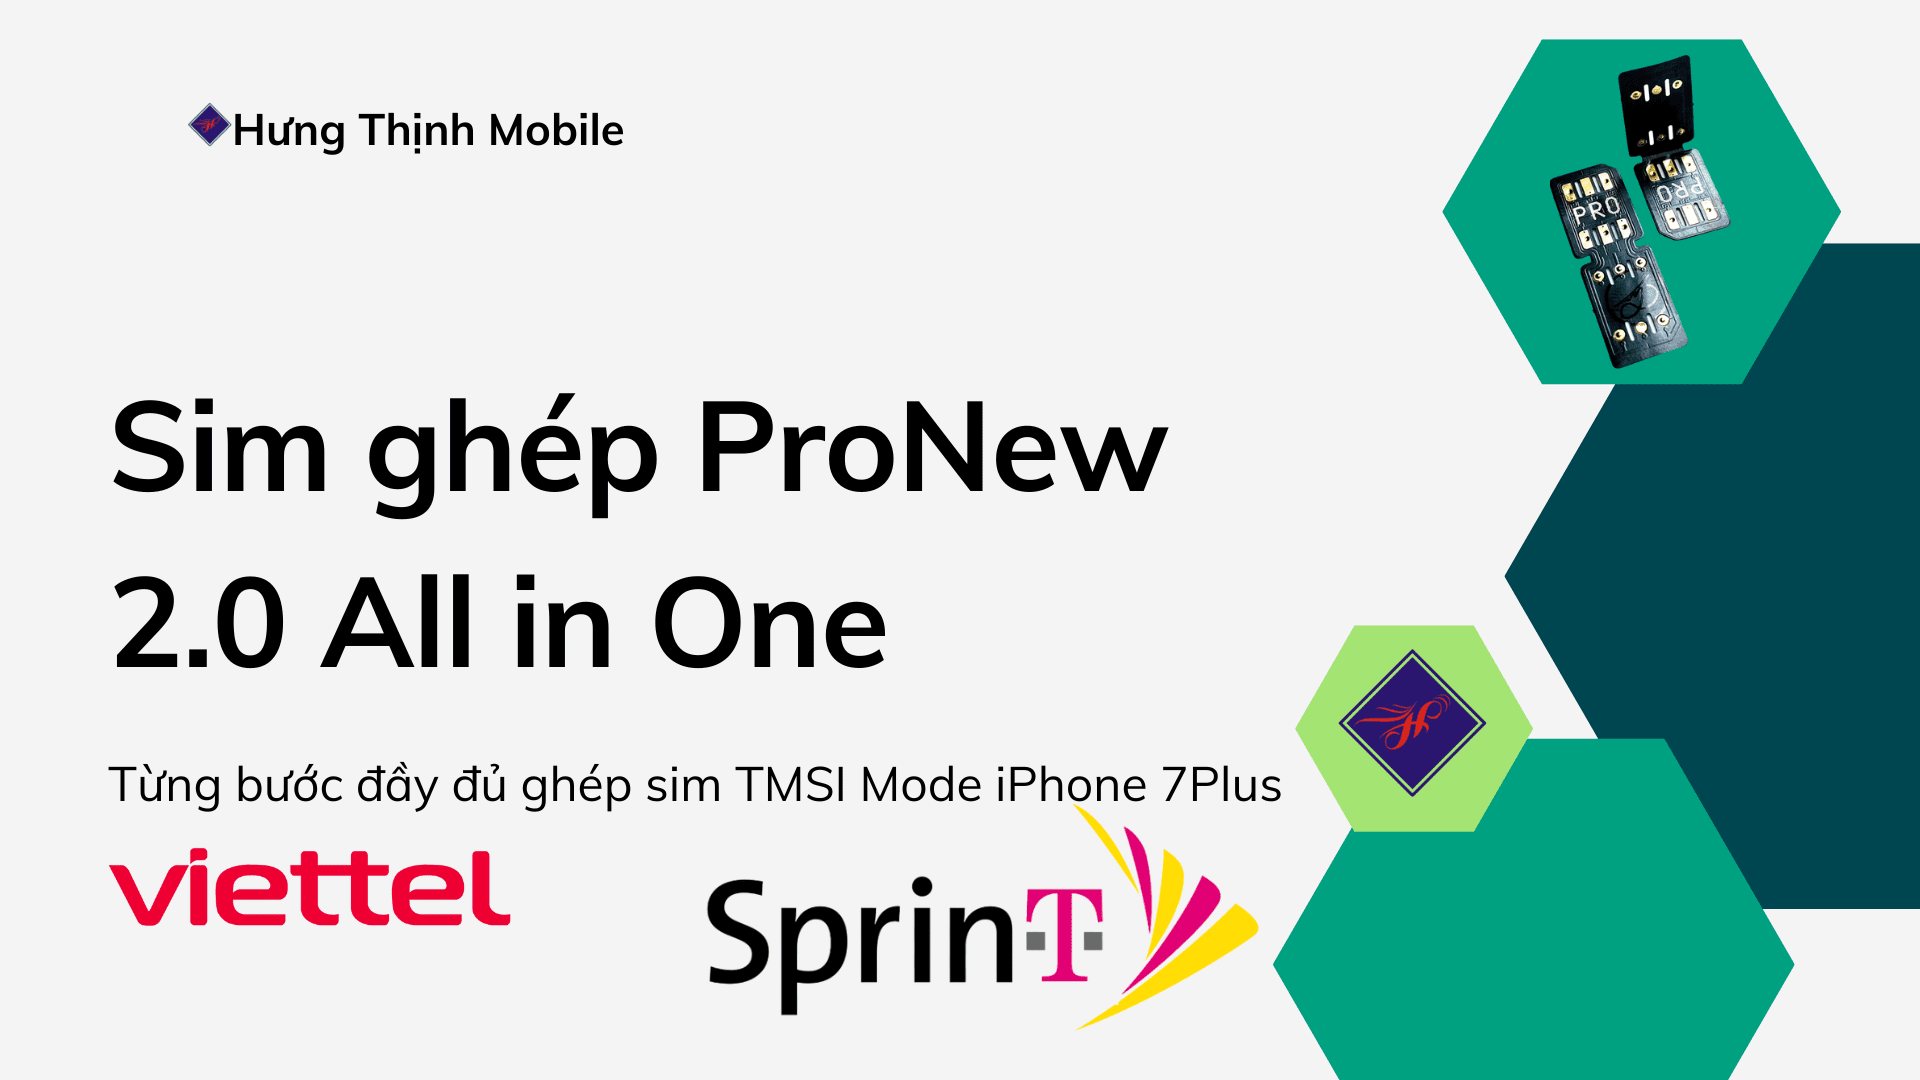 Ghép sim iPhone 7Plus Lock Sprint dễ dàng ProNew 2.0 All in One quá dễ ai cũng làm được, lên sóng ngon, giữ sóng tốt nhất do Hưng Thịnh Mobile phát triển.